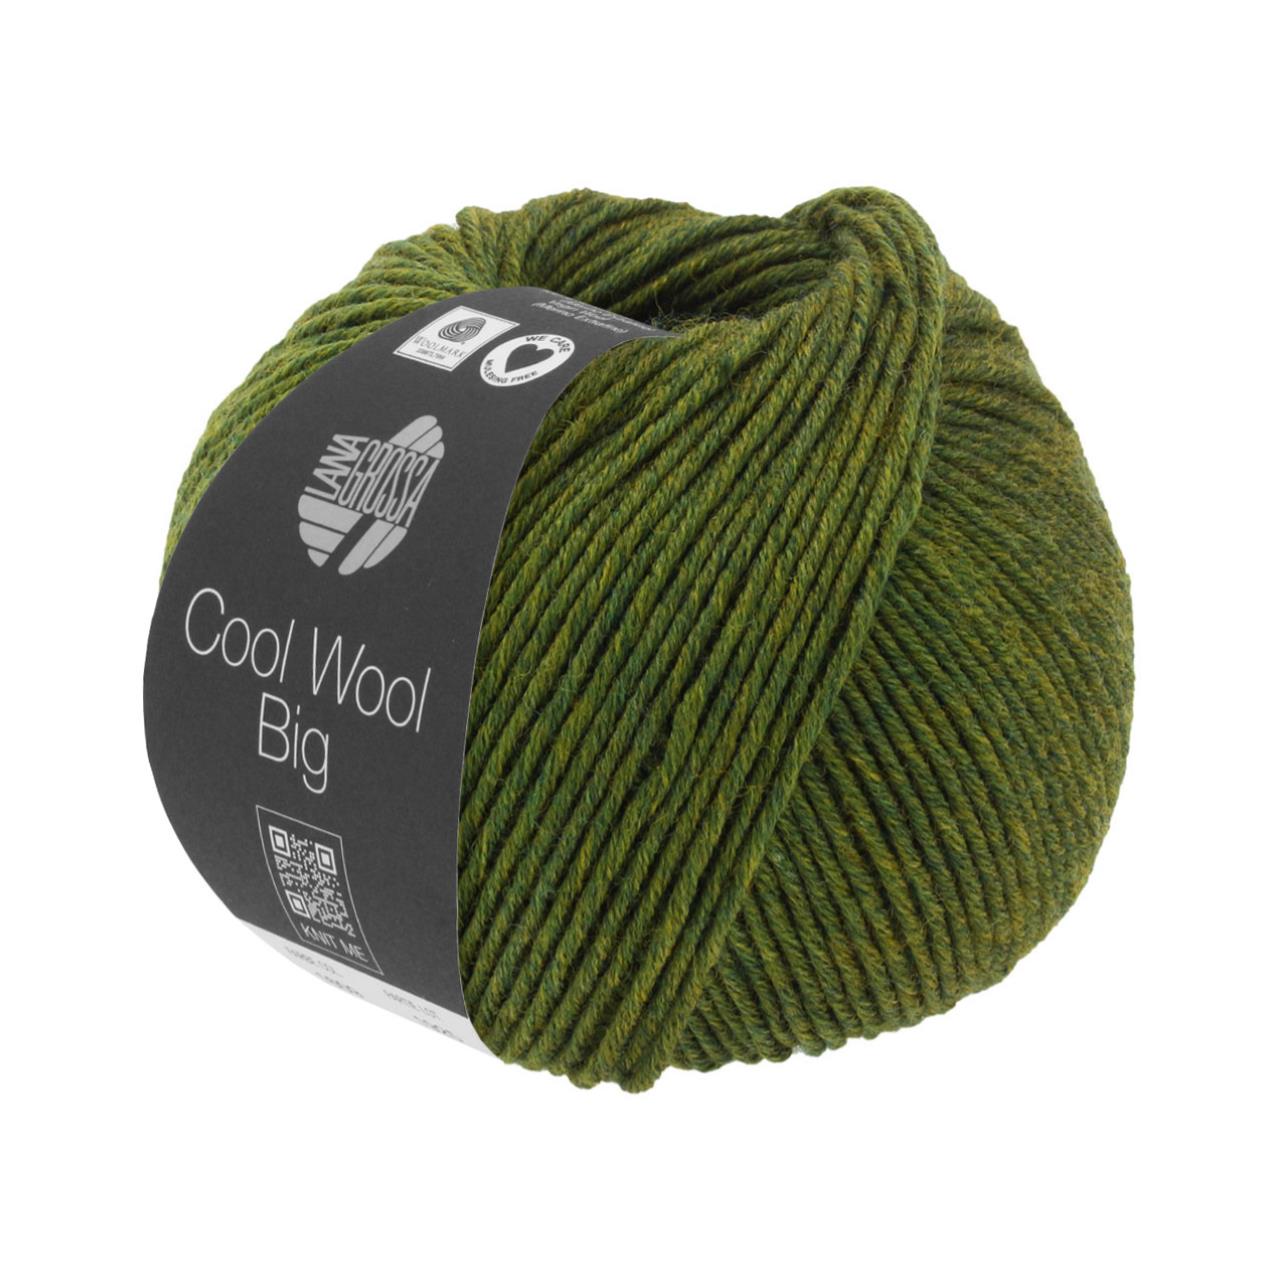 Cool Wool Big Mélange 1611 Grün meliert